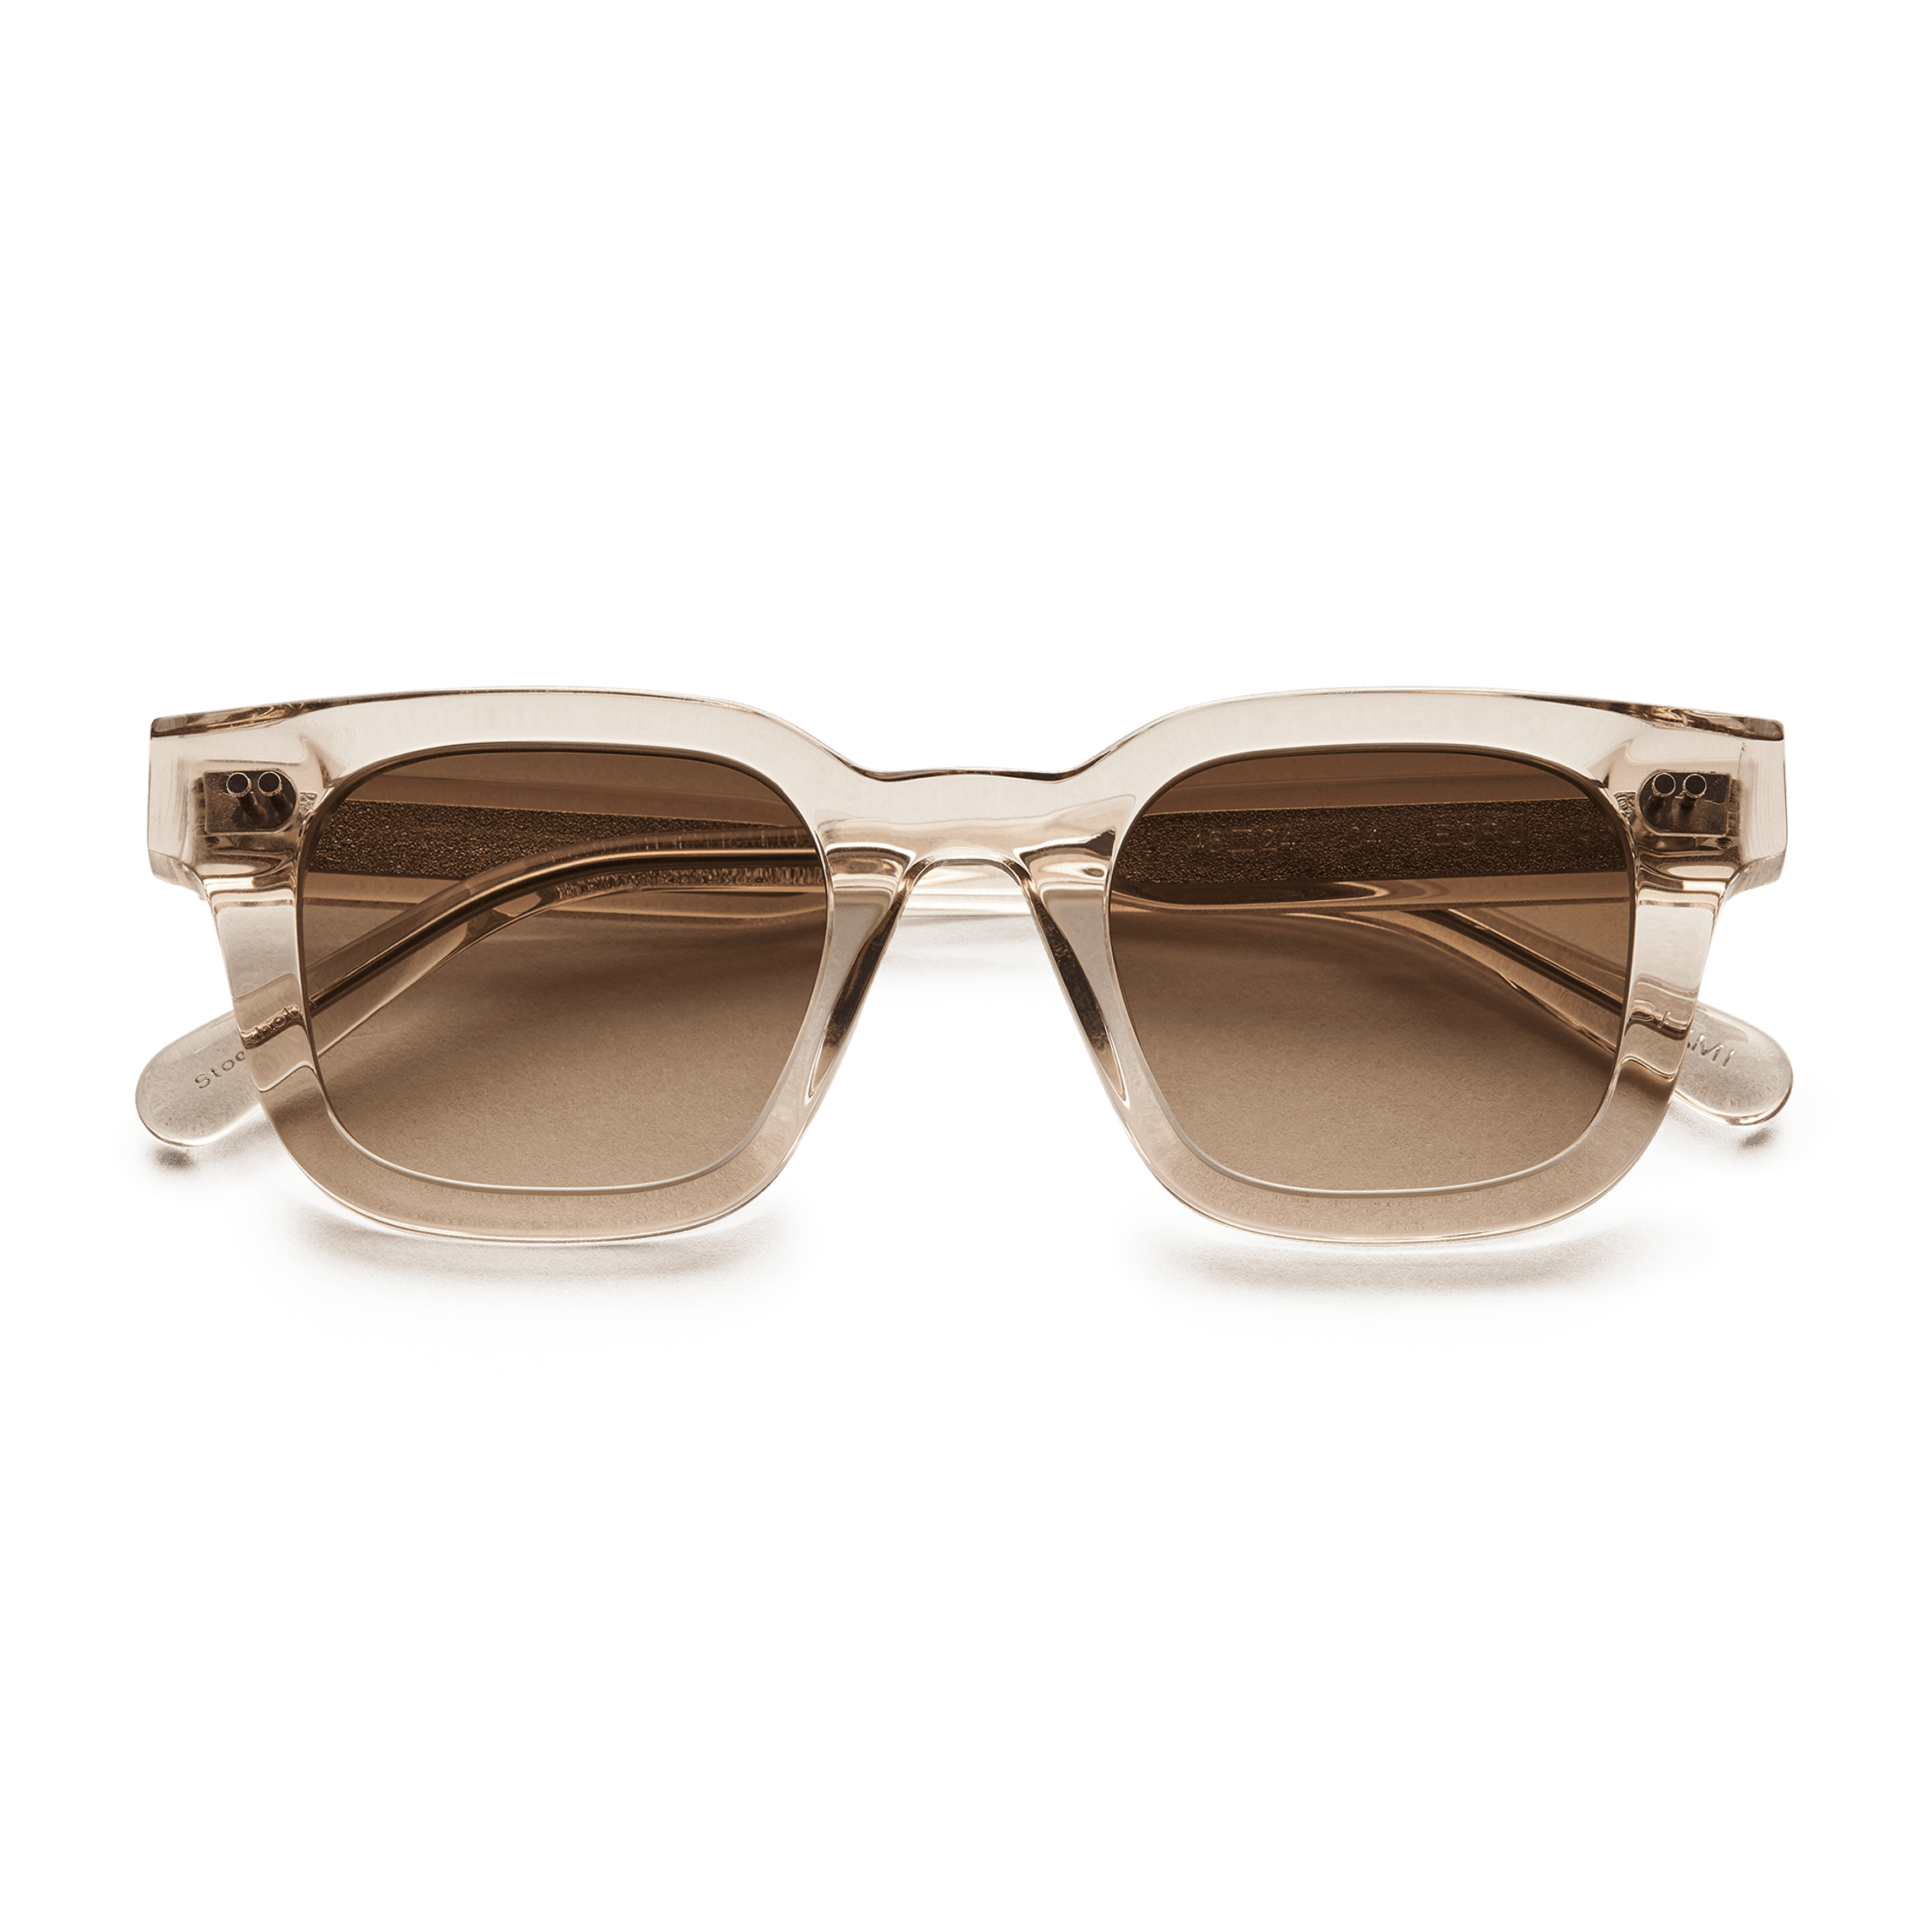 Ecru acetate sunglasses with a brown lense